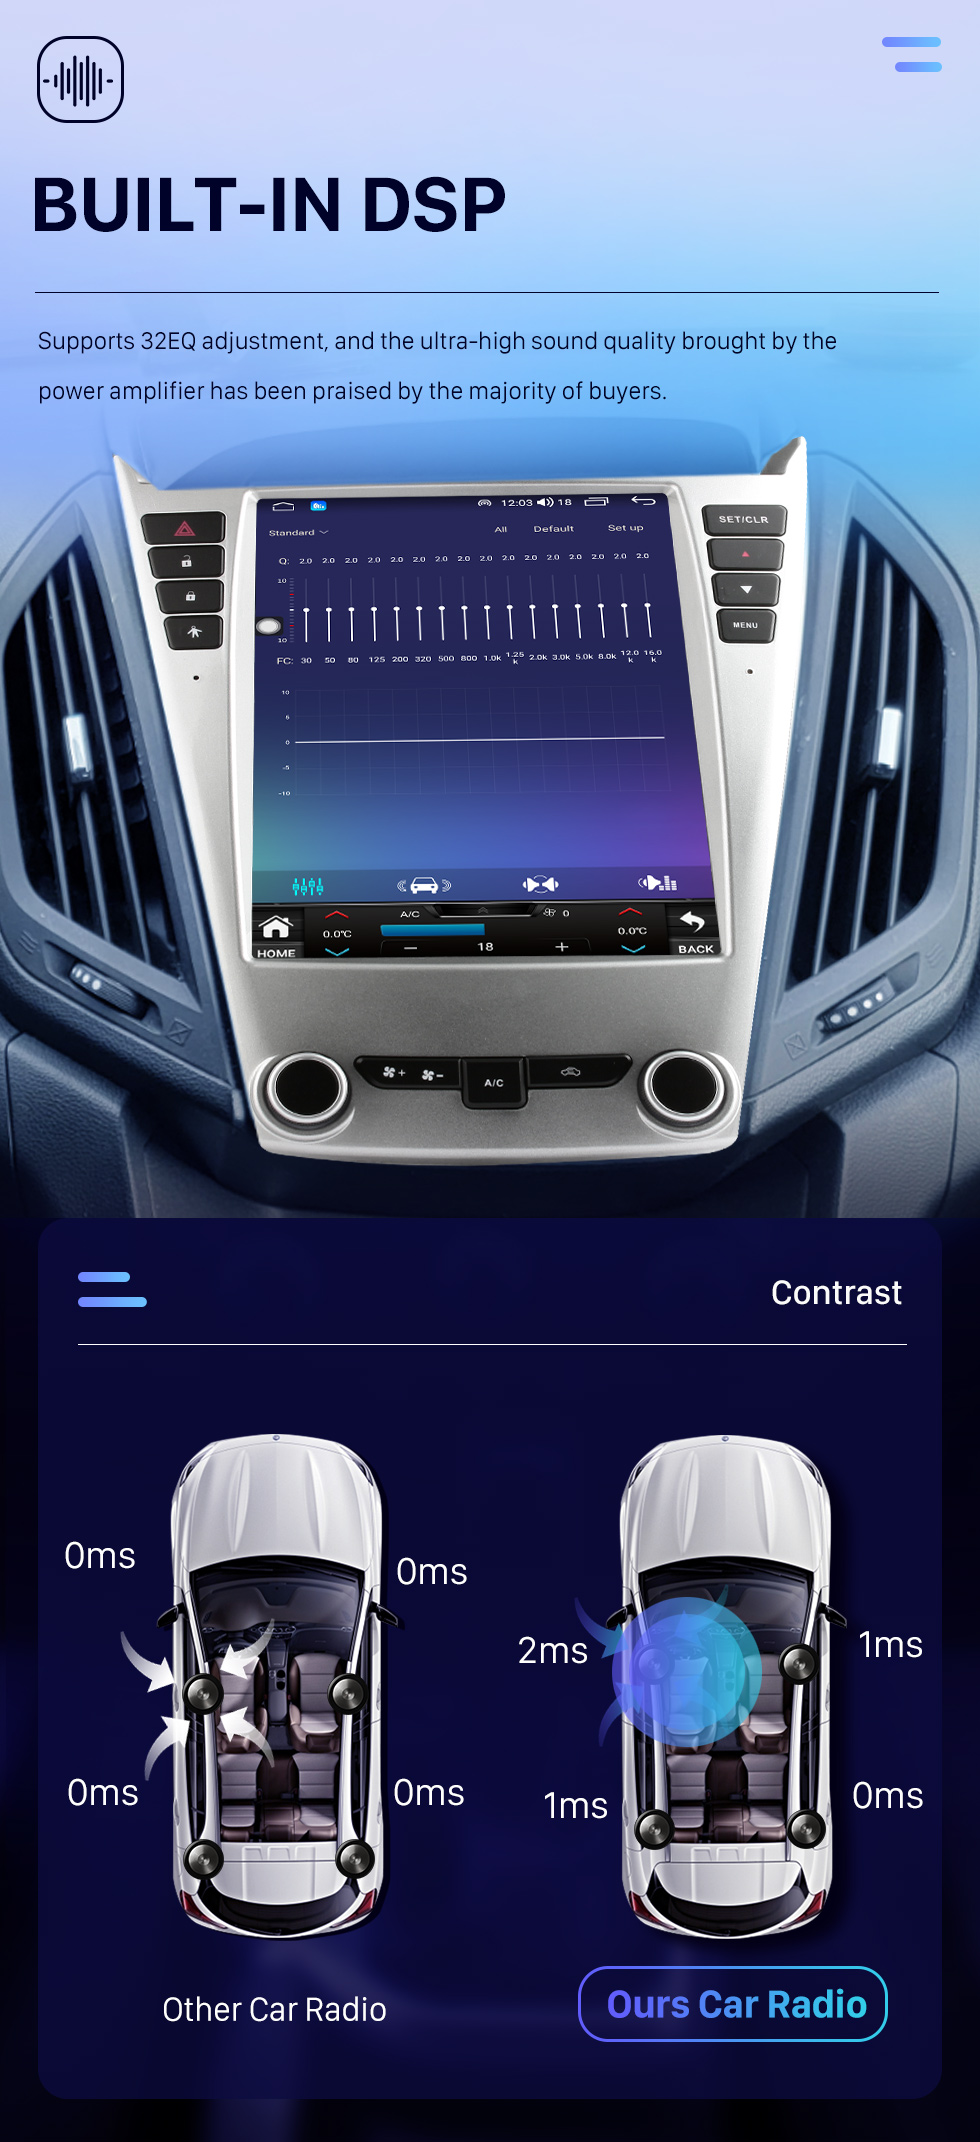 Seicane OEM 9,7-дюймовый Android 10.0 для 2010 2011 2012-2017 Chevy Chevrolet Equinox Radio GPS-навигационная система с сенсорным экраном HD Bluetooth Поддержка Carplay OBD2 DVR TPMS